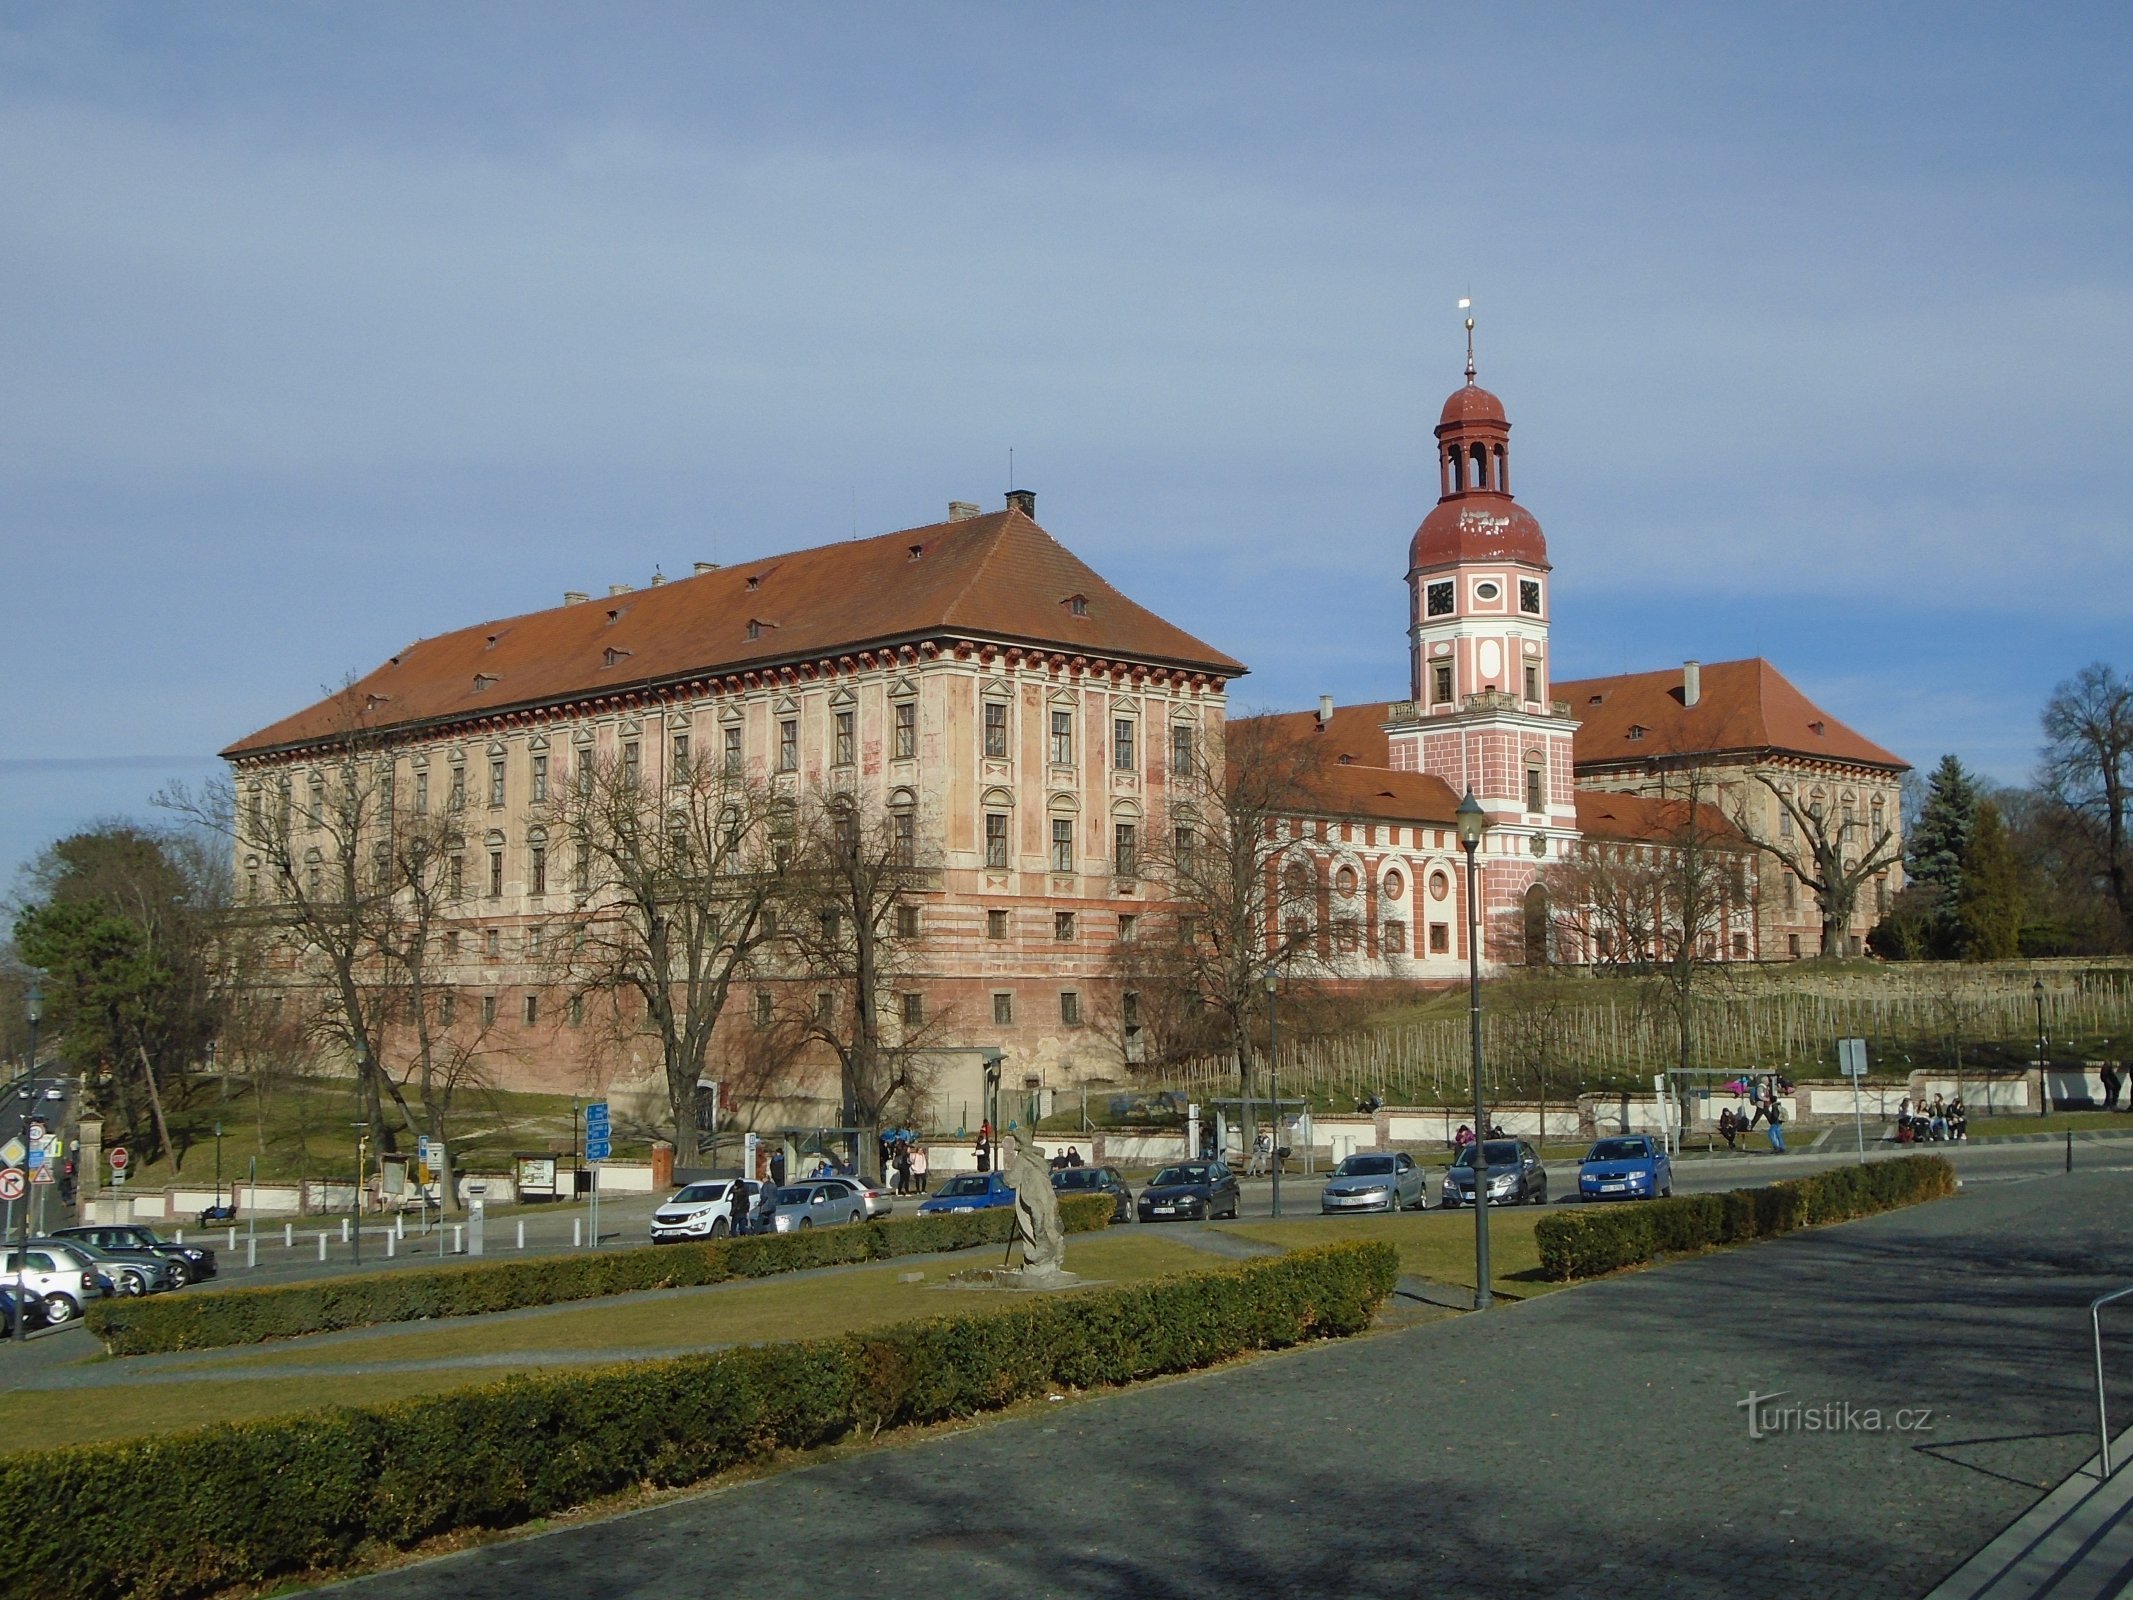 Castelul Lobkowicz (Roudnice nad Labem)